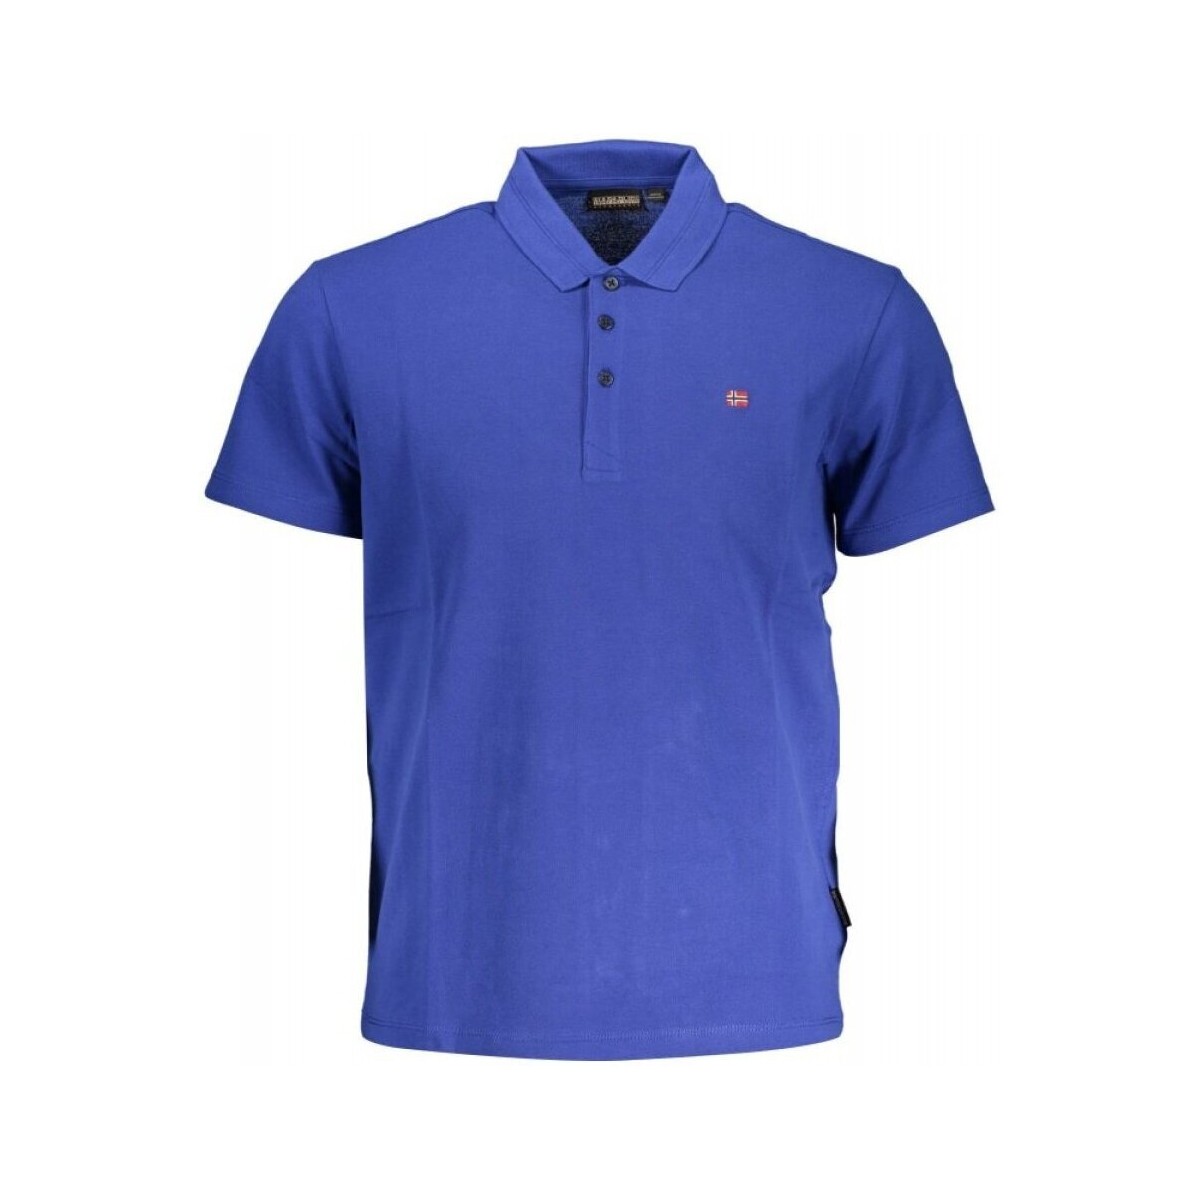 Oblačila Moški Majice & Polo majice Napapijri NP0A4H8B-EALIS-SS-SUM Modra